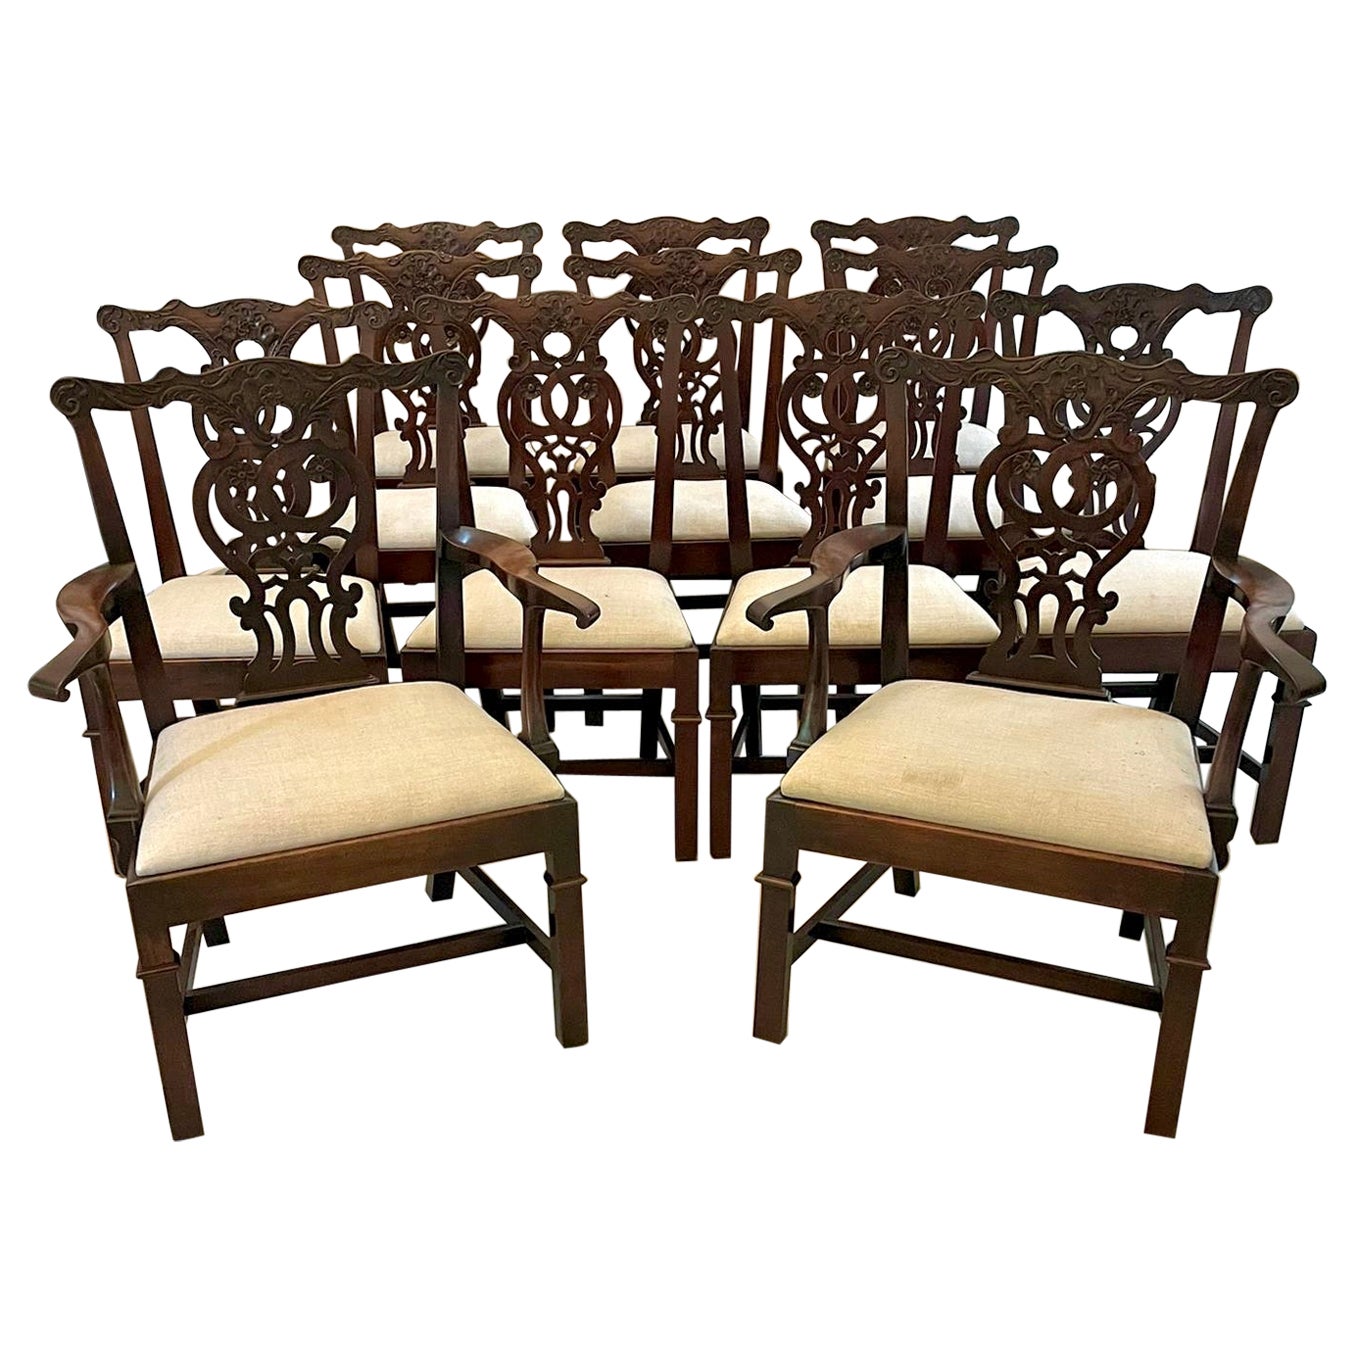 Ensemble de 12 chaises anciennes Chippendale en acajou sculpté de qualité du 18e siècle